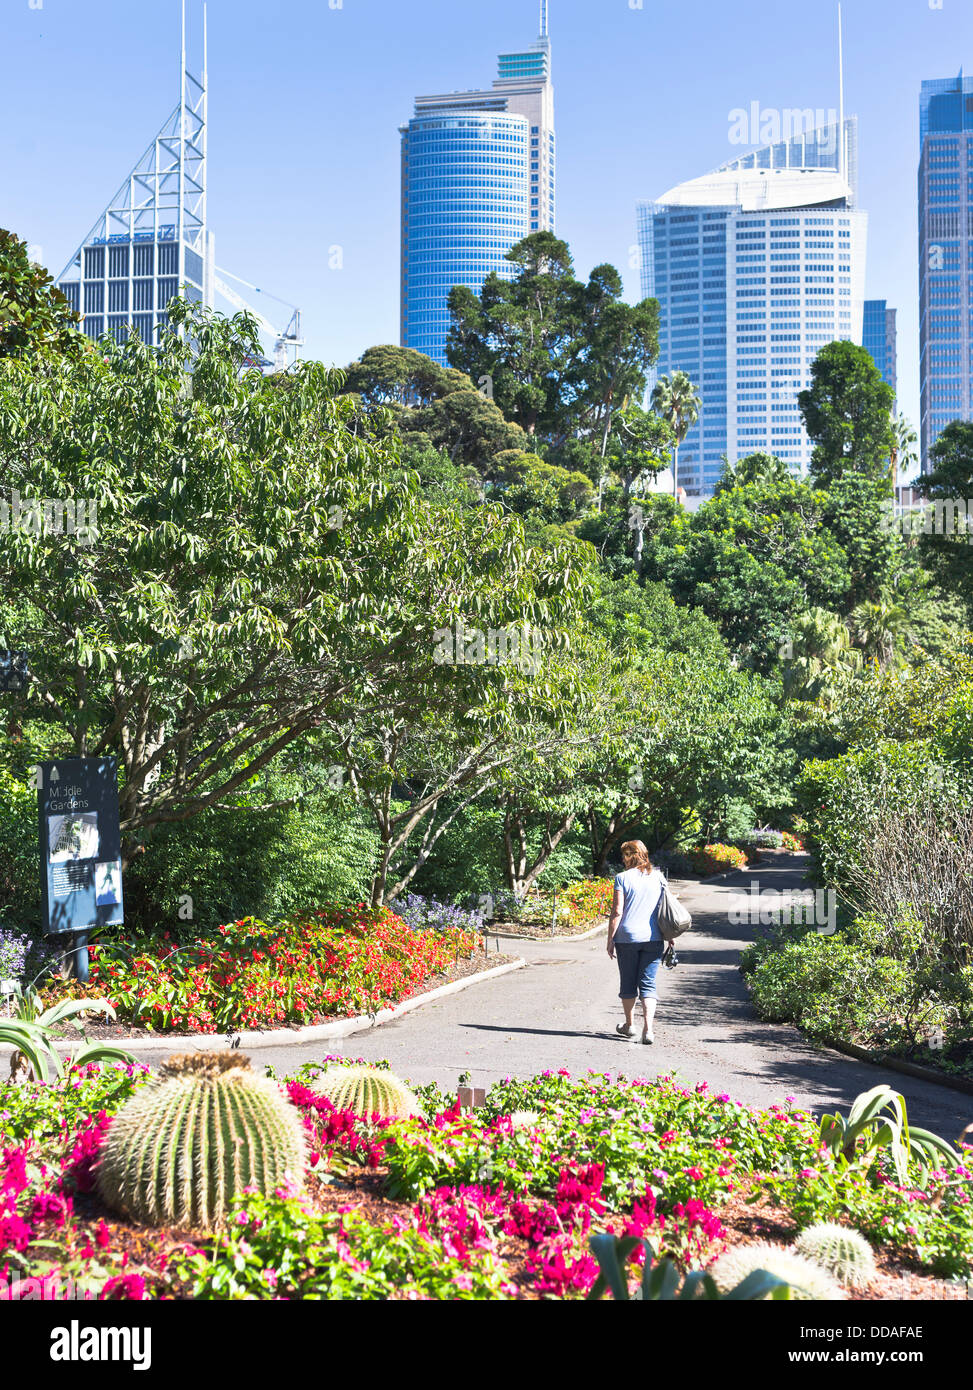 dh Royal Botanic Gardens SYDNEY Australien Frau Park Central Business District Stadt Skyline Gebäude Garten Menschen Stockfoto